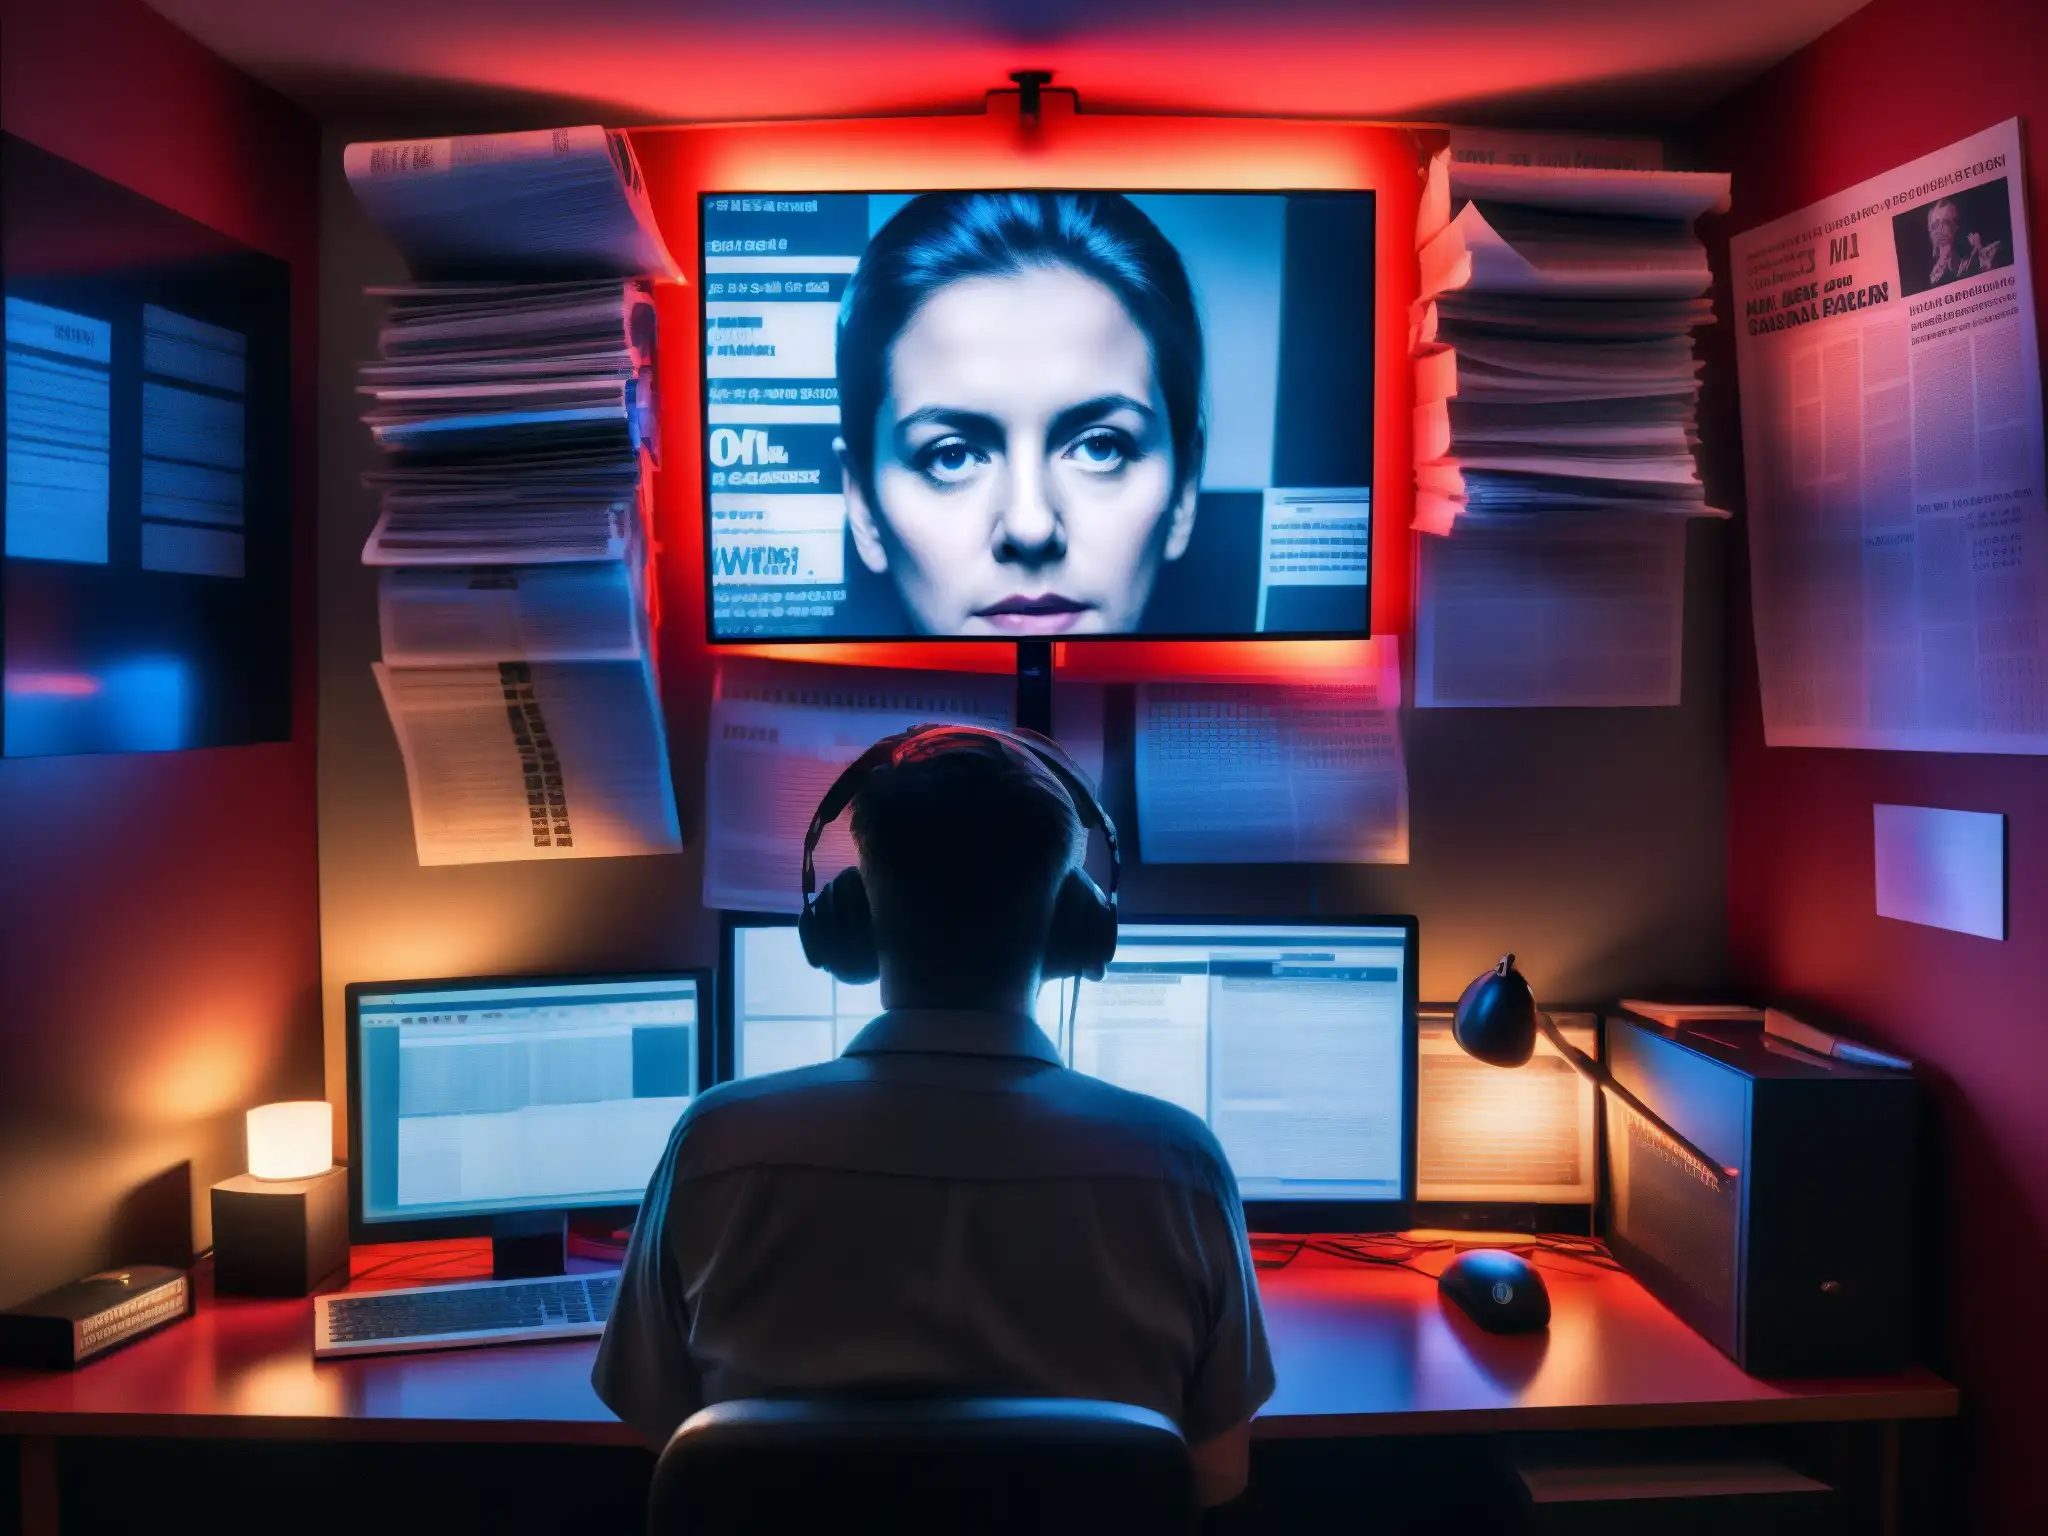 Persona en habitación oscura con monitor, periódicos, cuerdas y equipo de vigilancia, reflejando el mito del asesino de la webcam